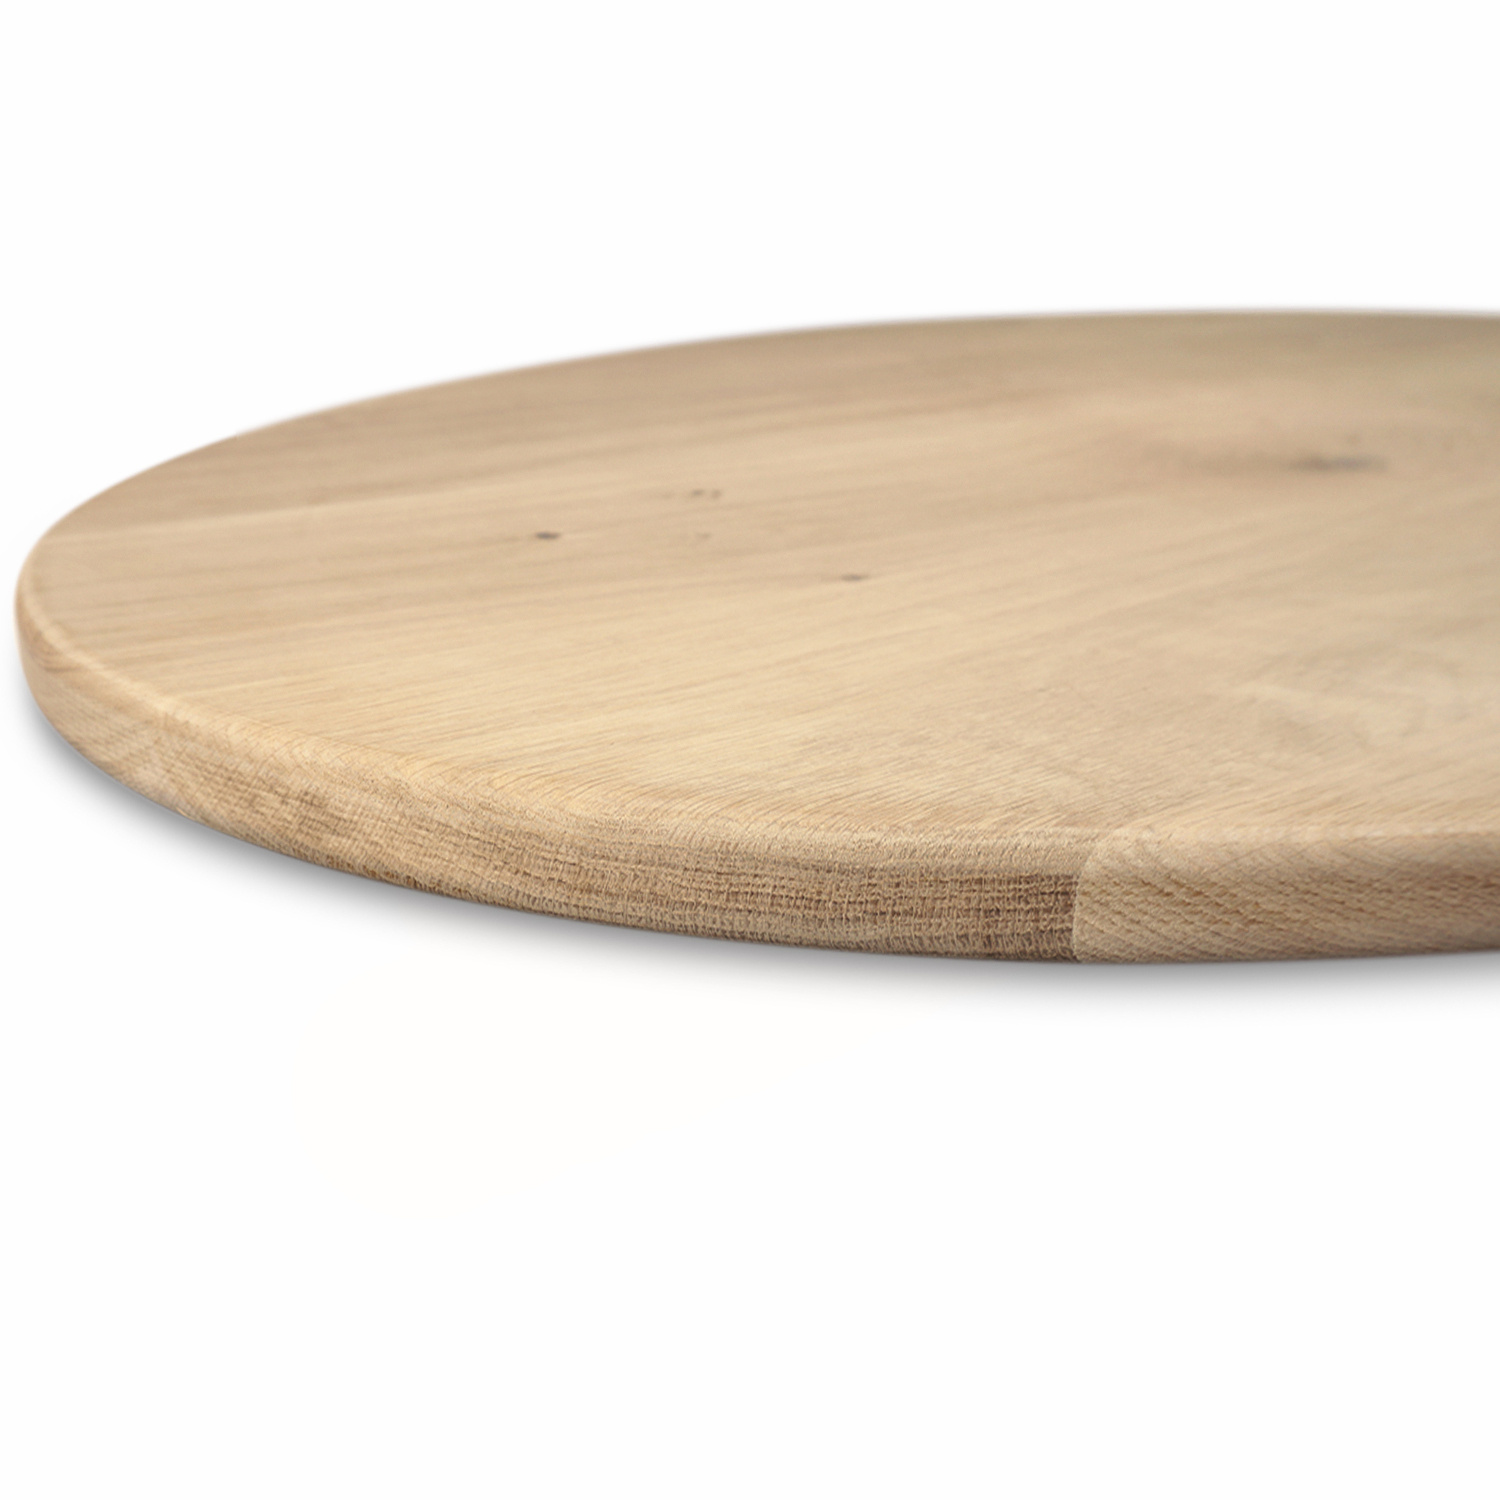  Tischplatte Wildeiche oval - 4 cm dick (1-Schicht) - XXL Lamellen (14-20 cm breit) - Asteiche (rustikal) - Tischplatte ovale / ellipse Eiche - verleimt & künstlich getrocknet (HF 8-12%) - verschiedene Größen